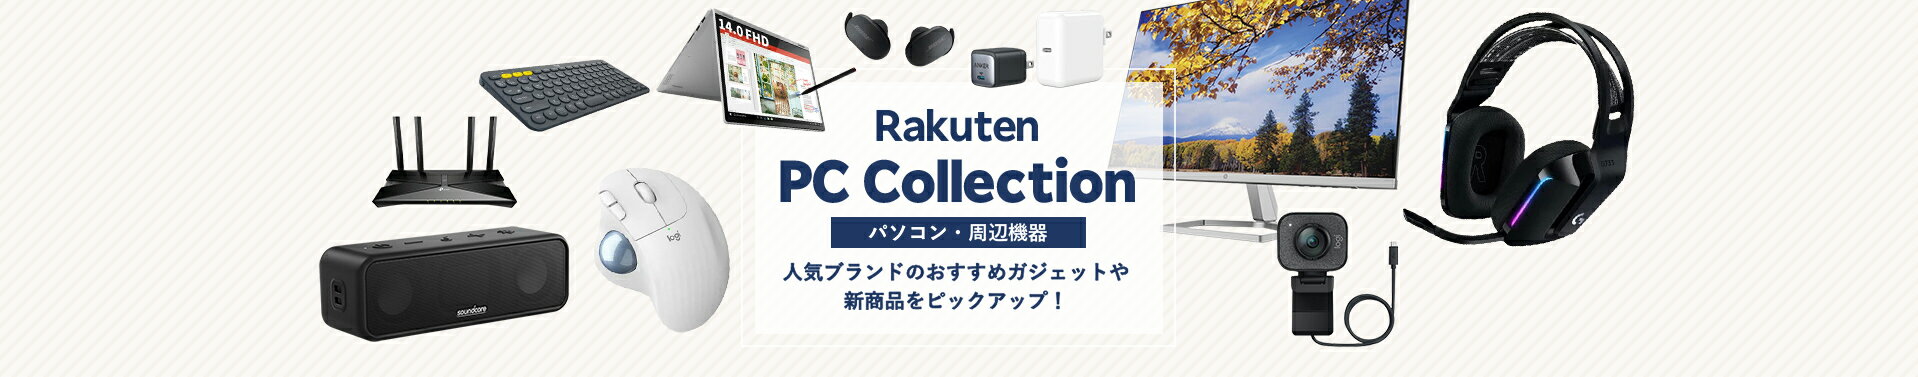 Rakuten PC Collection -パソコン・周辺機器-